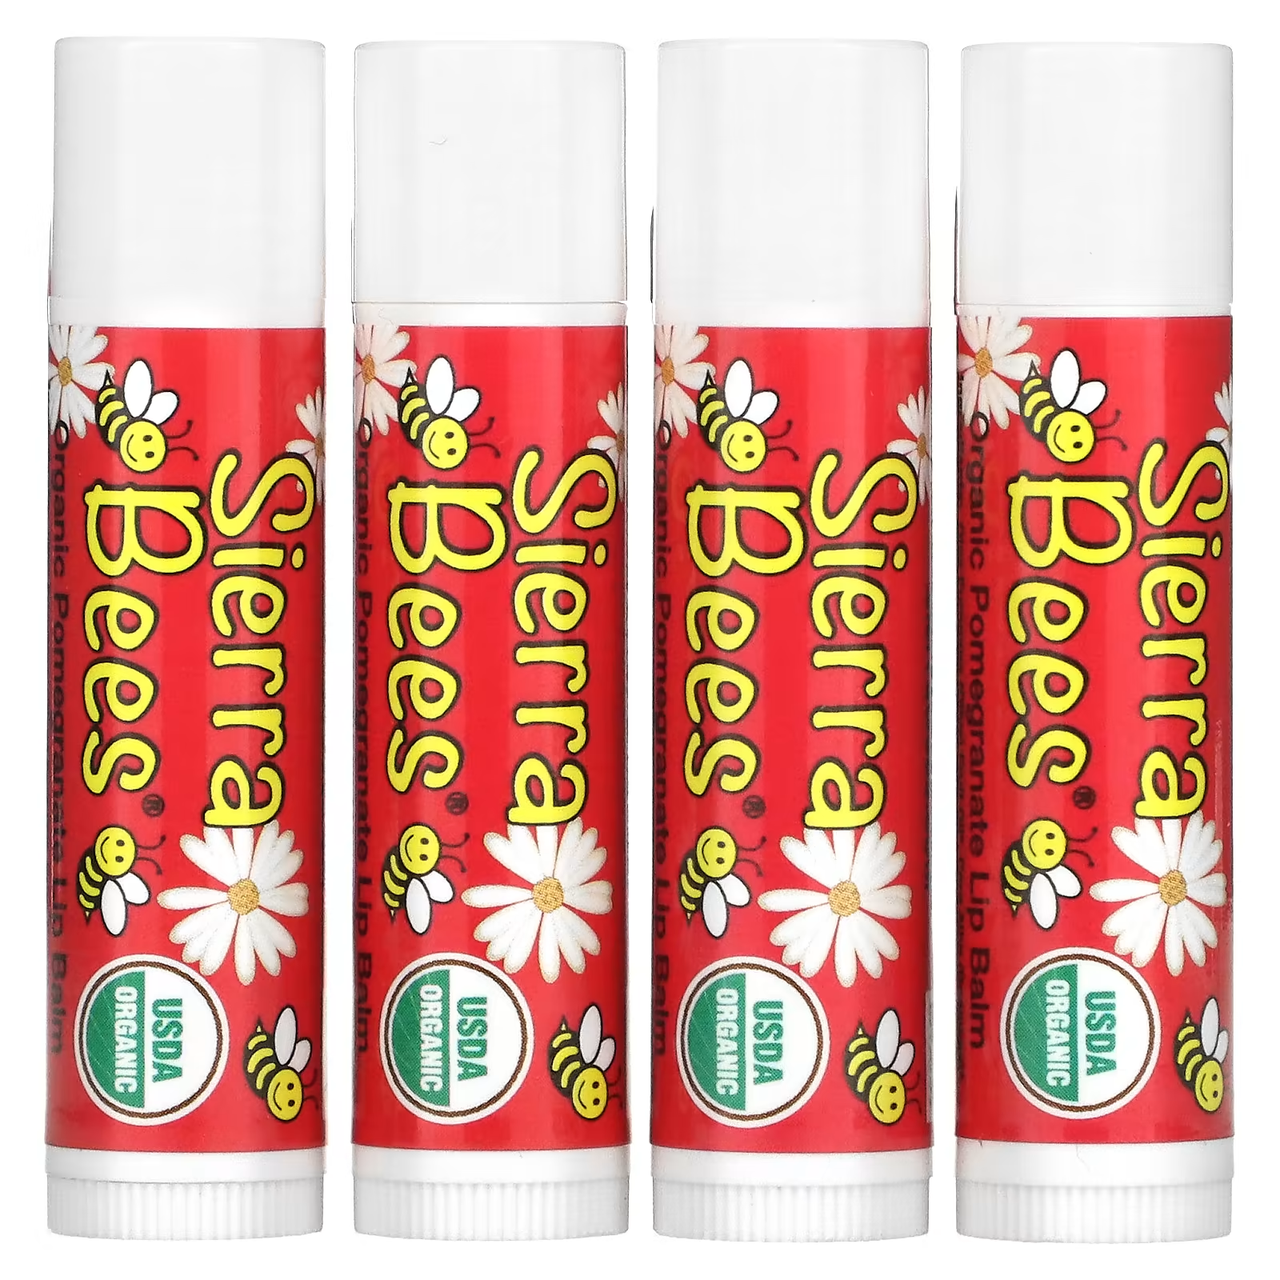 Органічні бальзами для губ, кокос, 4 шт. в упаковці, Sierra Bees